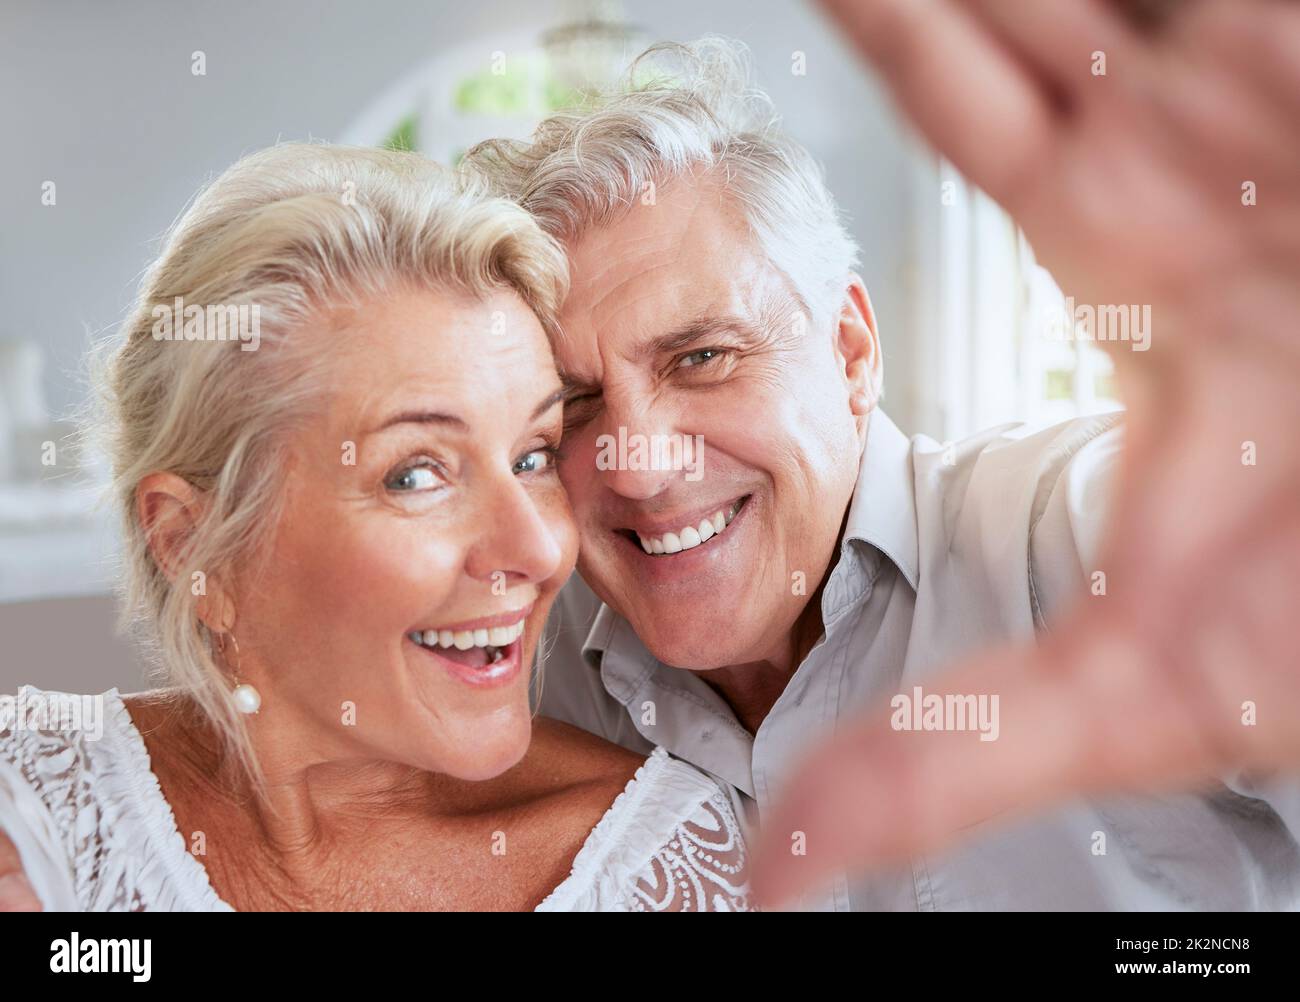 Gesicht Selfie, ältere Paar und Liebe Lächeln im Ruhestand im häuslichen Interieur. Portrait, glückliche ältere und pensionierte romantische Lebenspartner von Mann und Frau Stockfoto